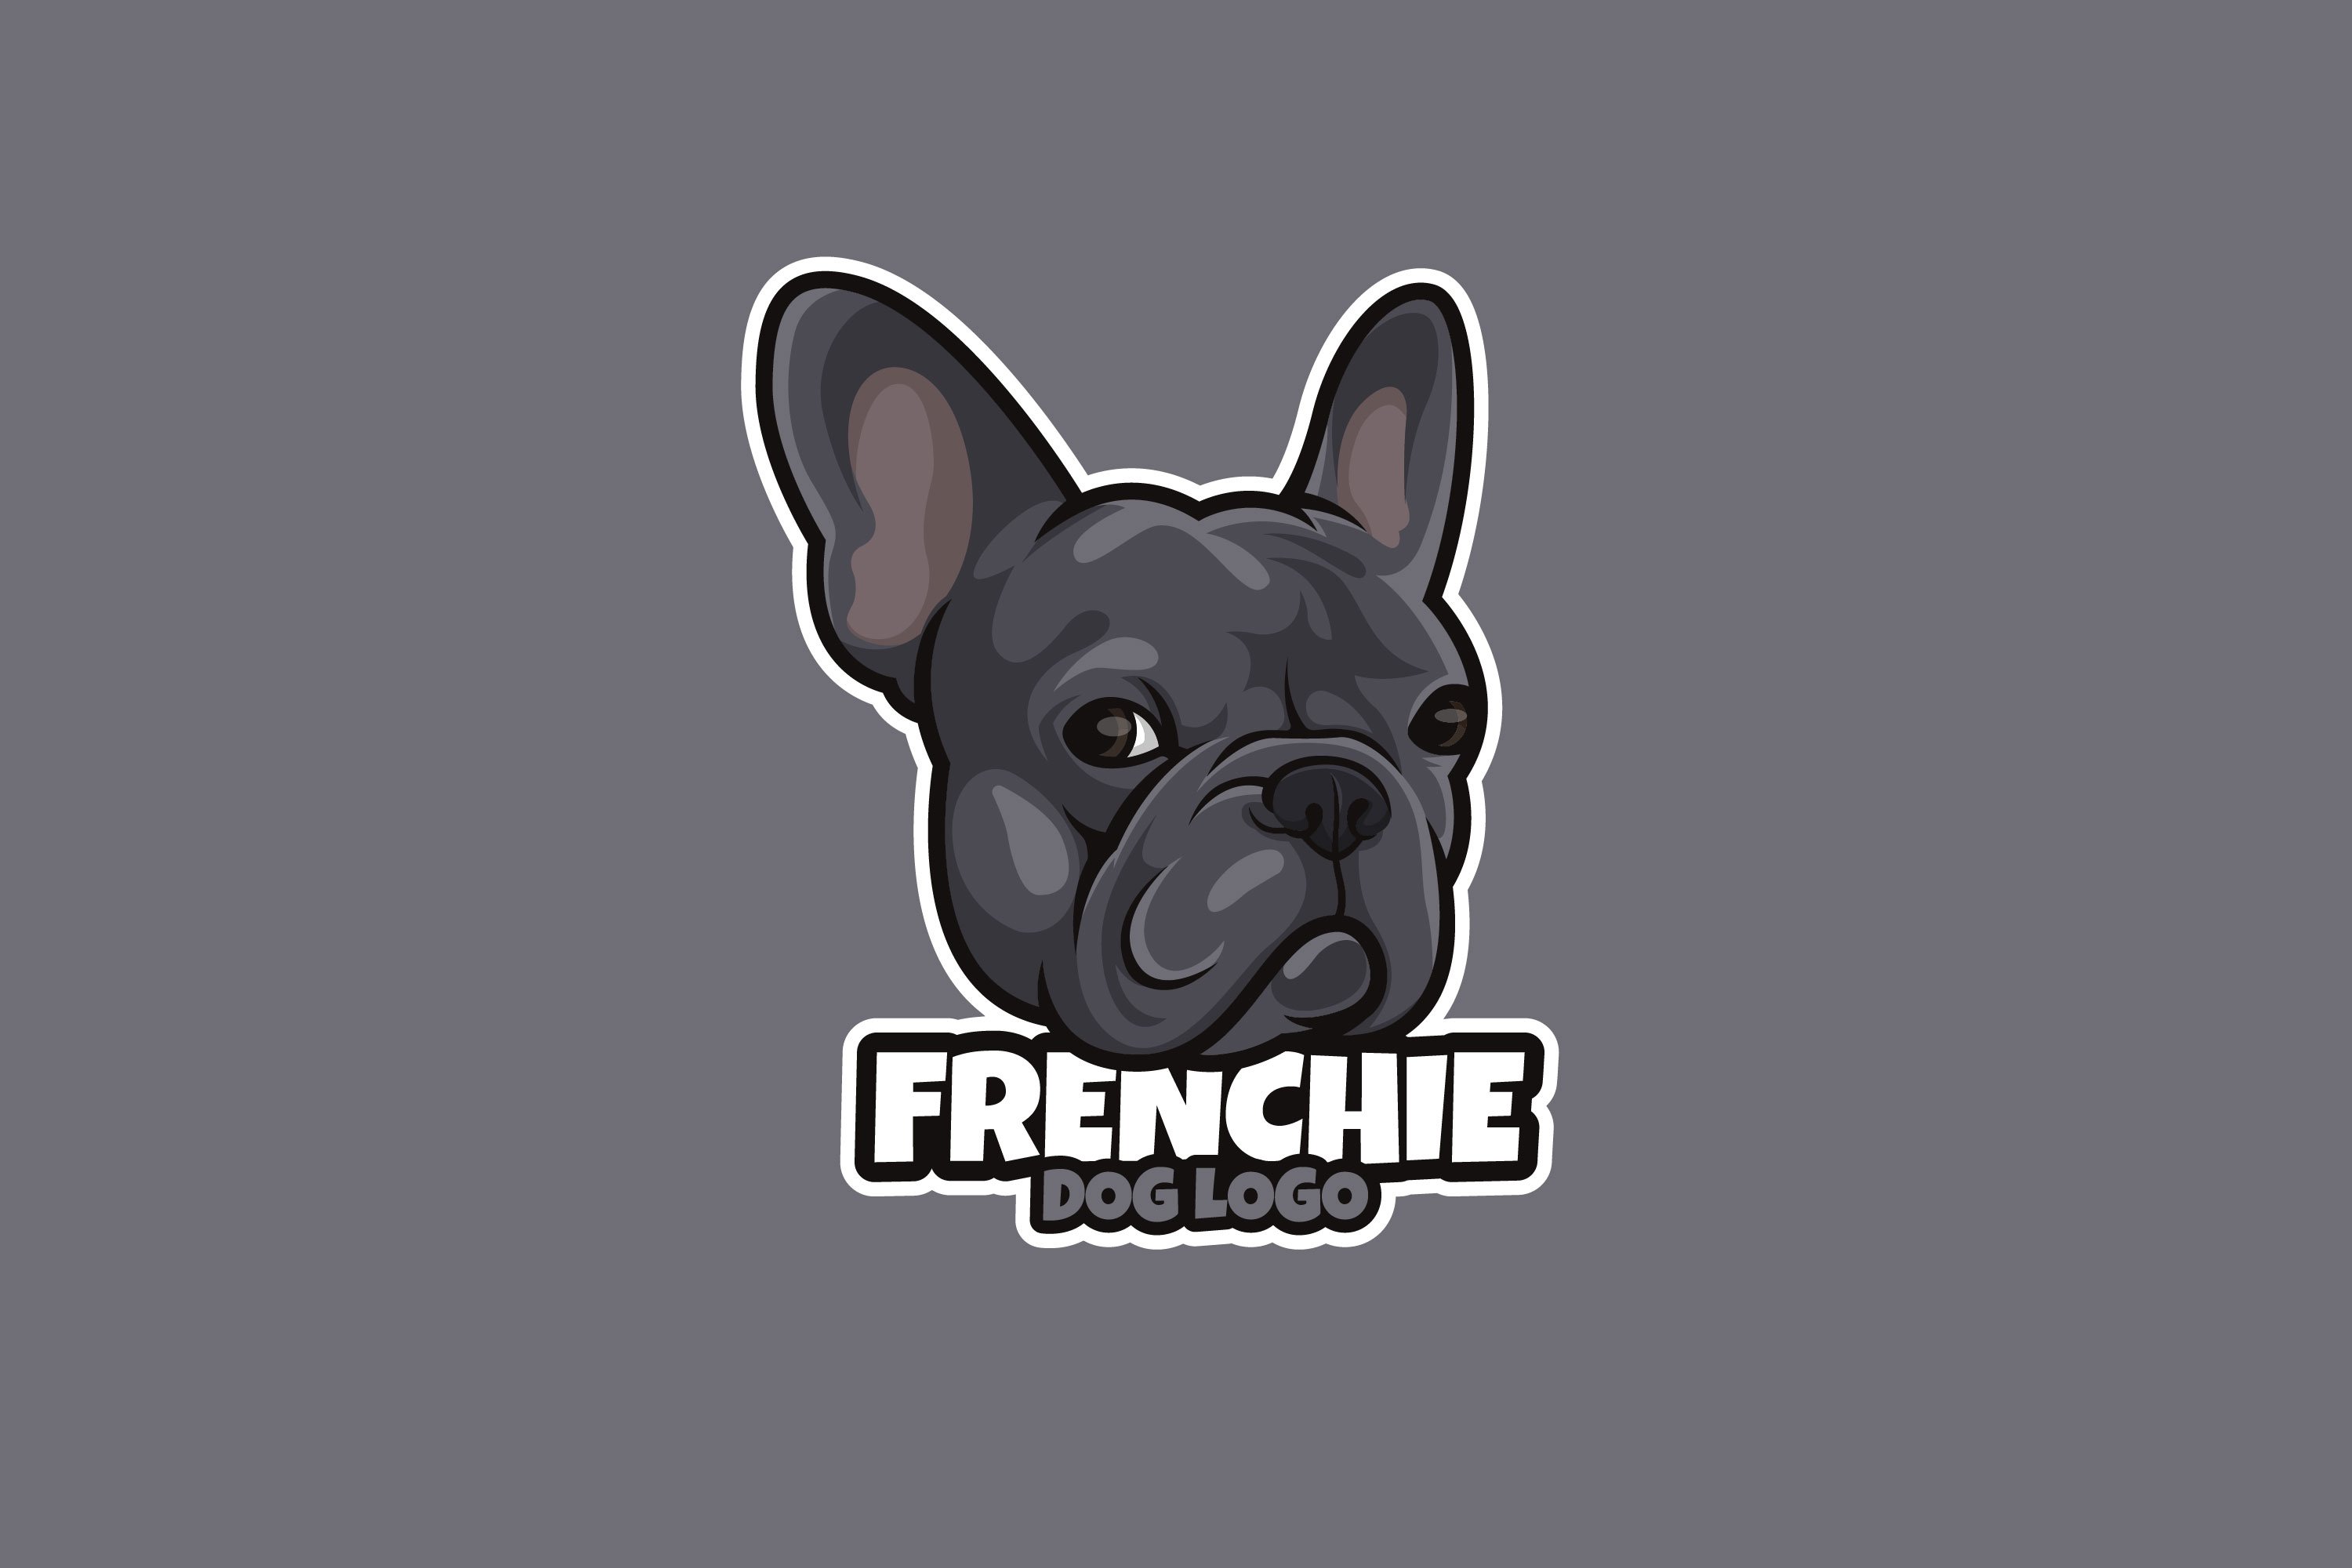 Frenchie Dog Cartoon Logo cover image.